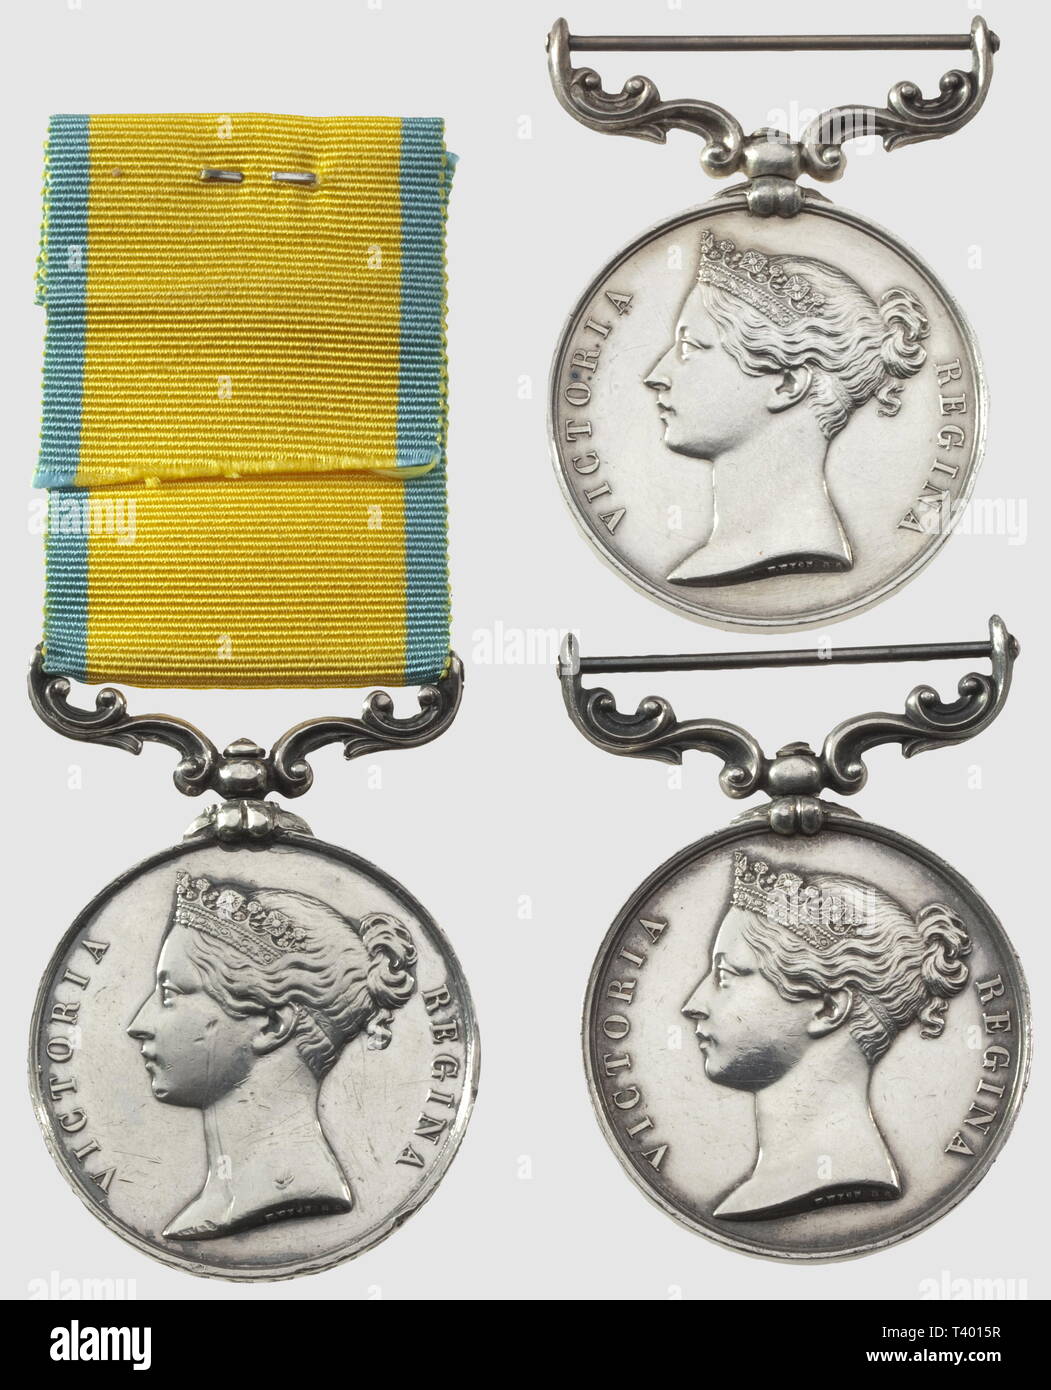 Trois Médailles de la "baltique" 1854-1855, du Graveur" L.C. Wyon', une attribuée' W. Starkey", deux sans Ruban, Additional-Rights - Clearance-Info - Not-Available Stockfoto